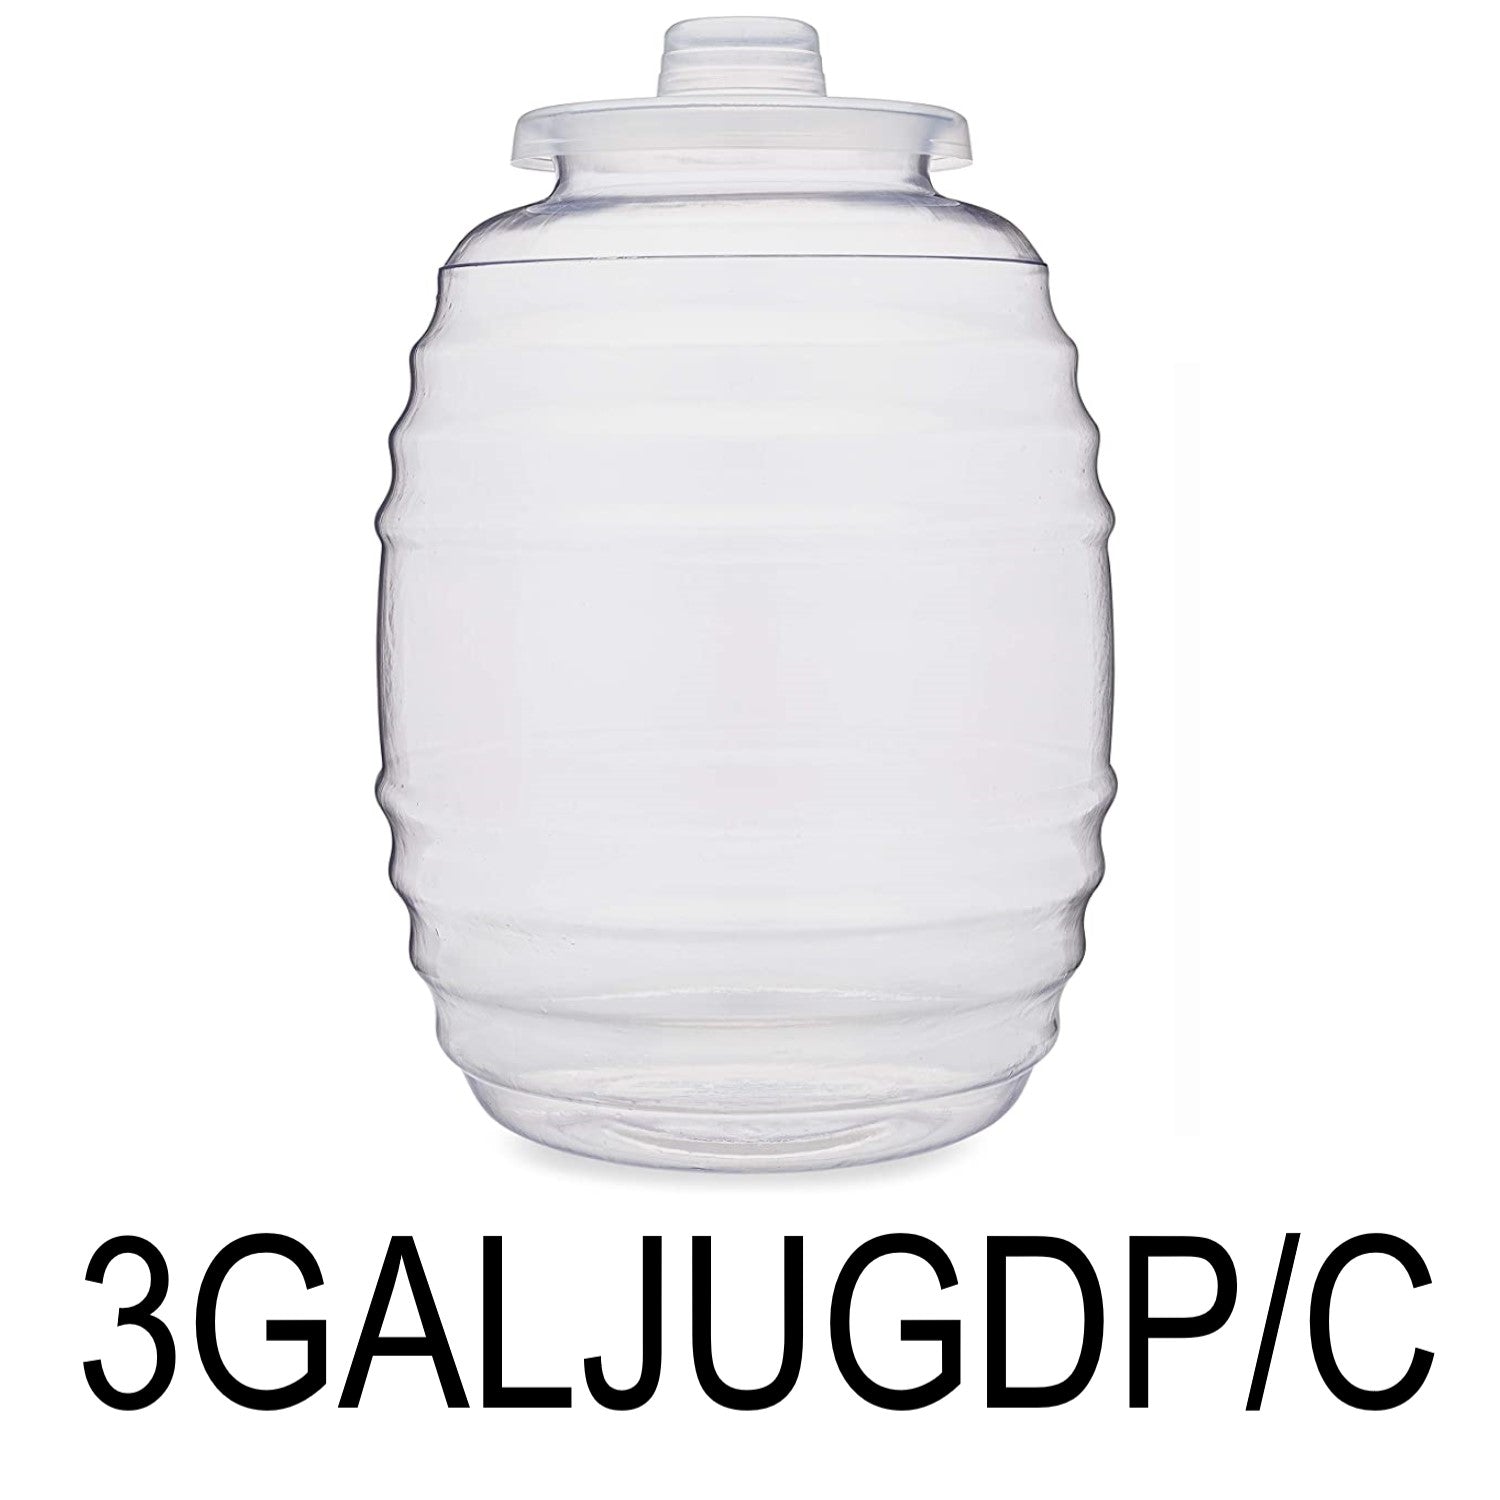 Made in Mexico Aguas Frescas 5-Gallon Vitrolero Plastic Water Container